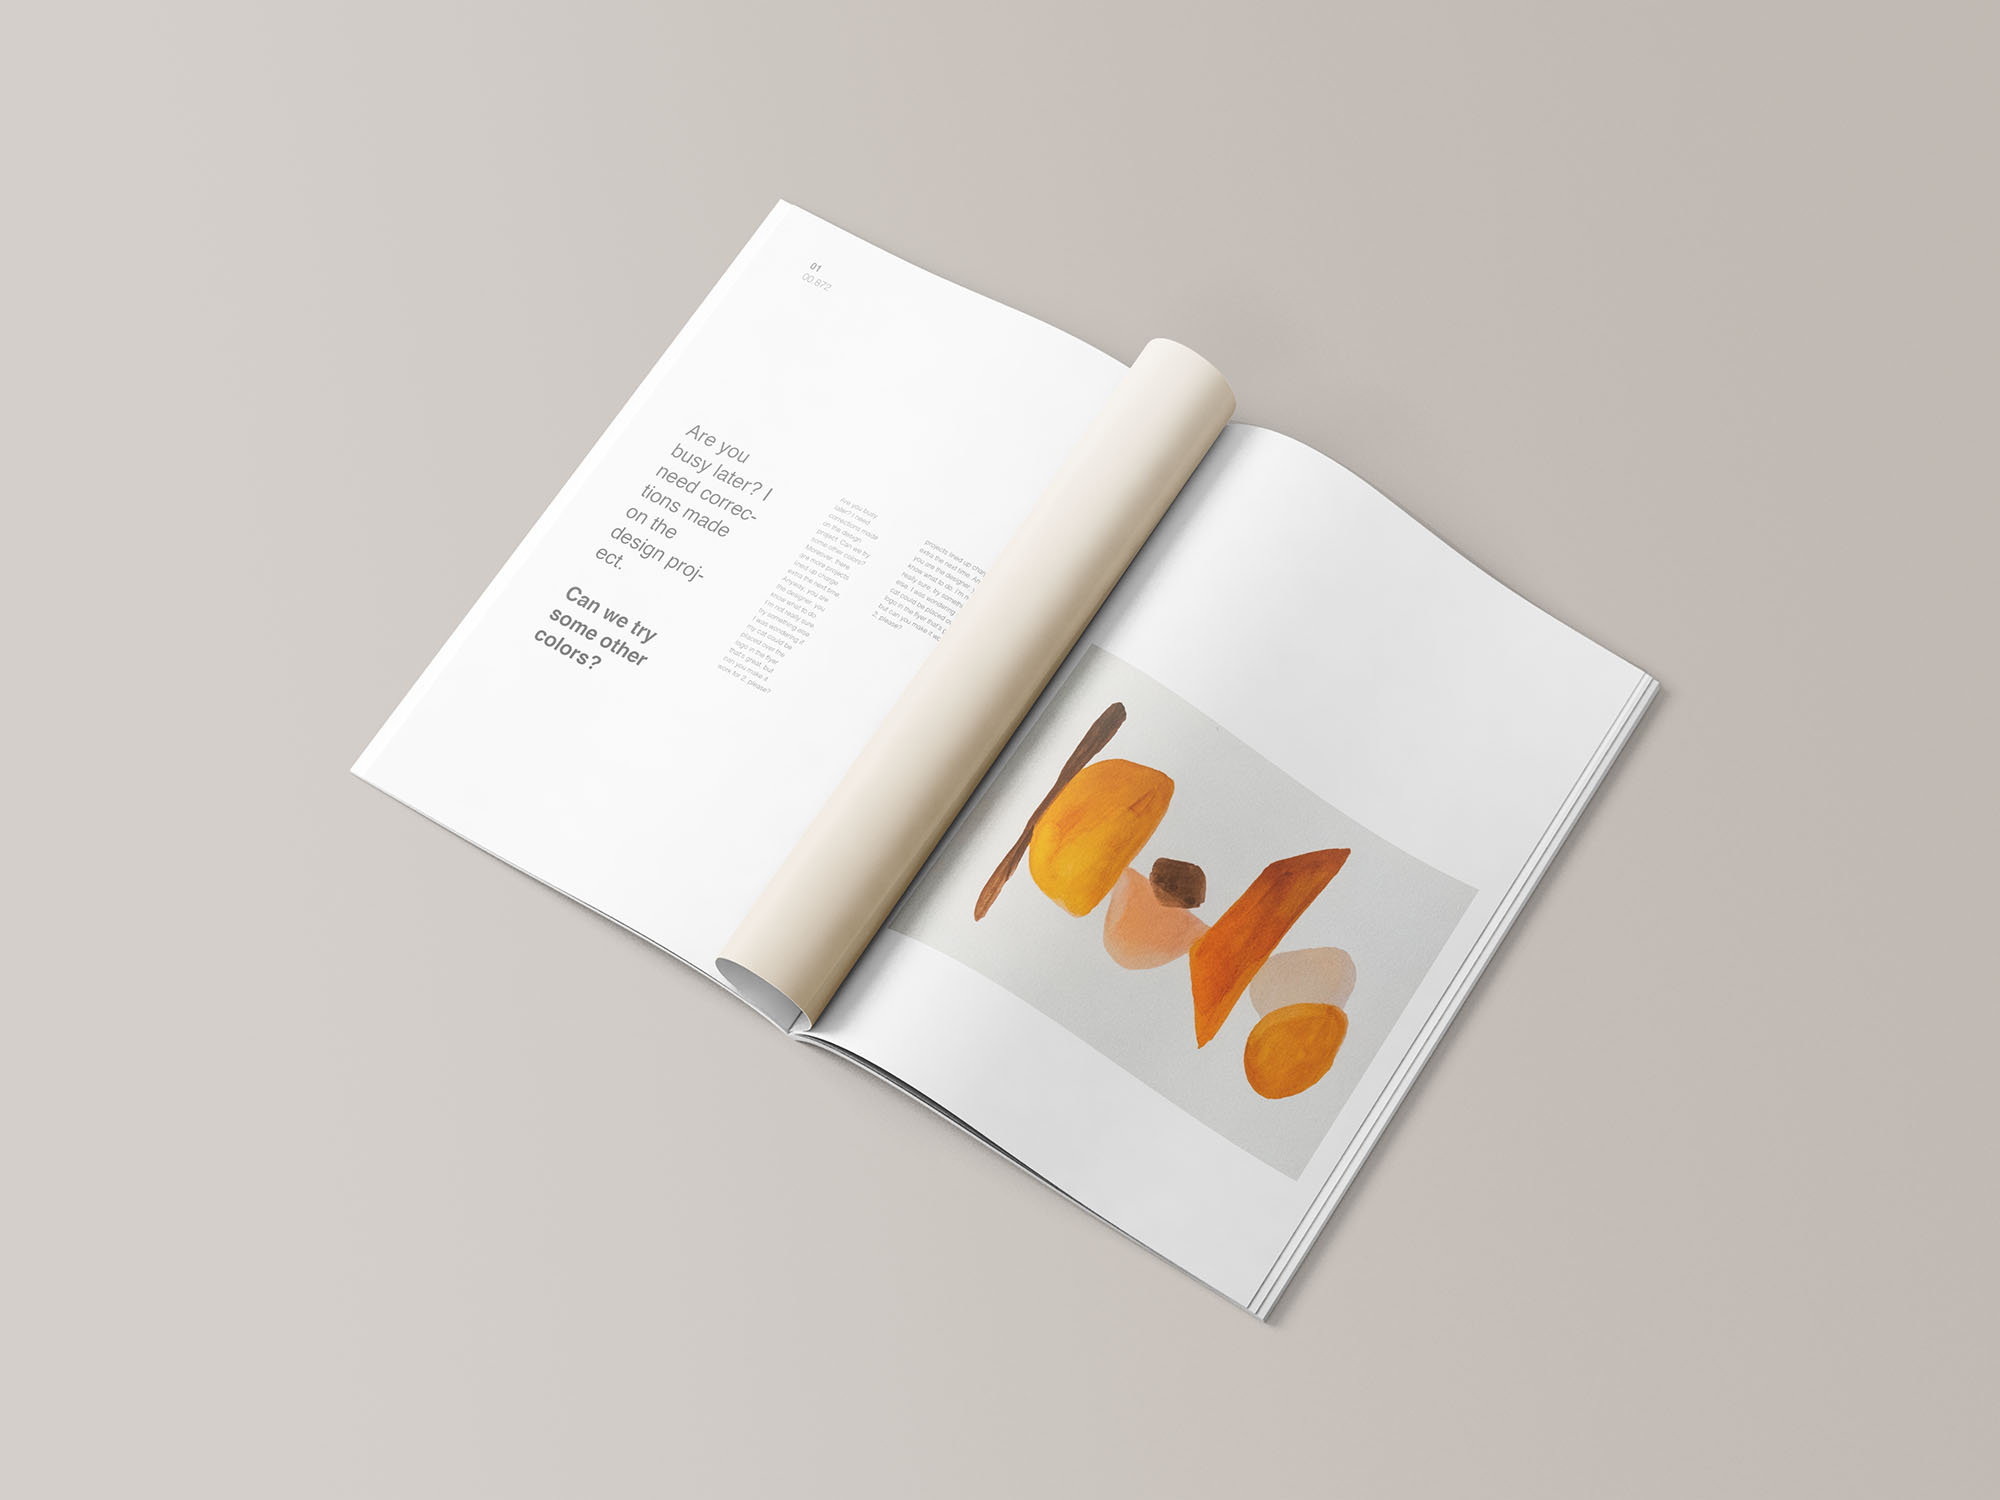 高品质极简主义A4杂志画册宣传册设计提案展示样机模板 16